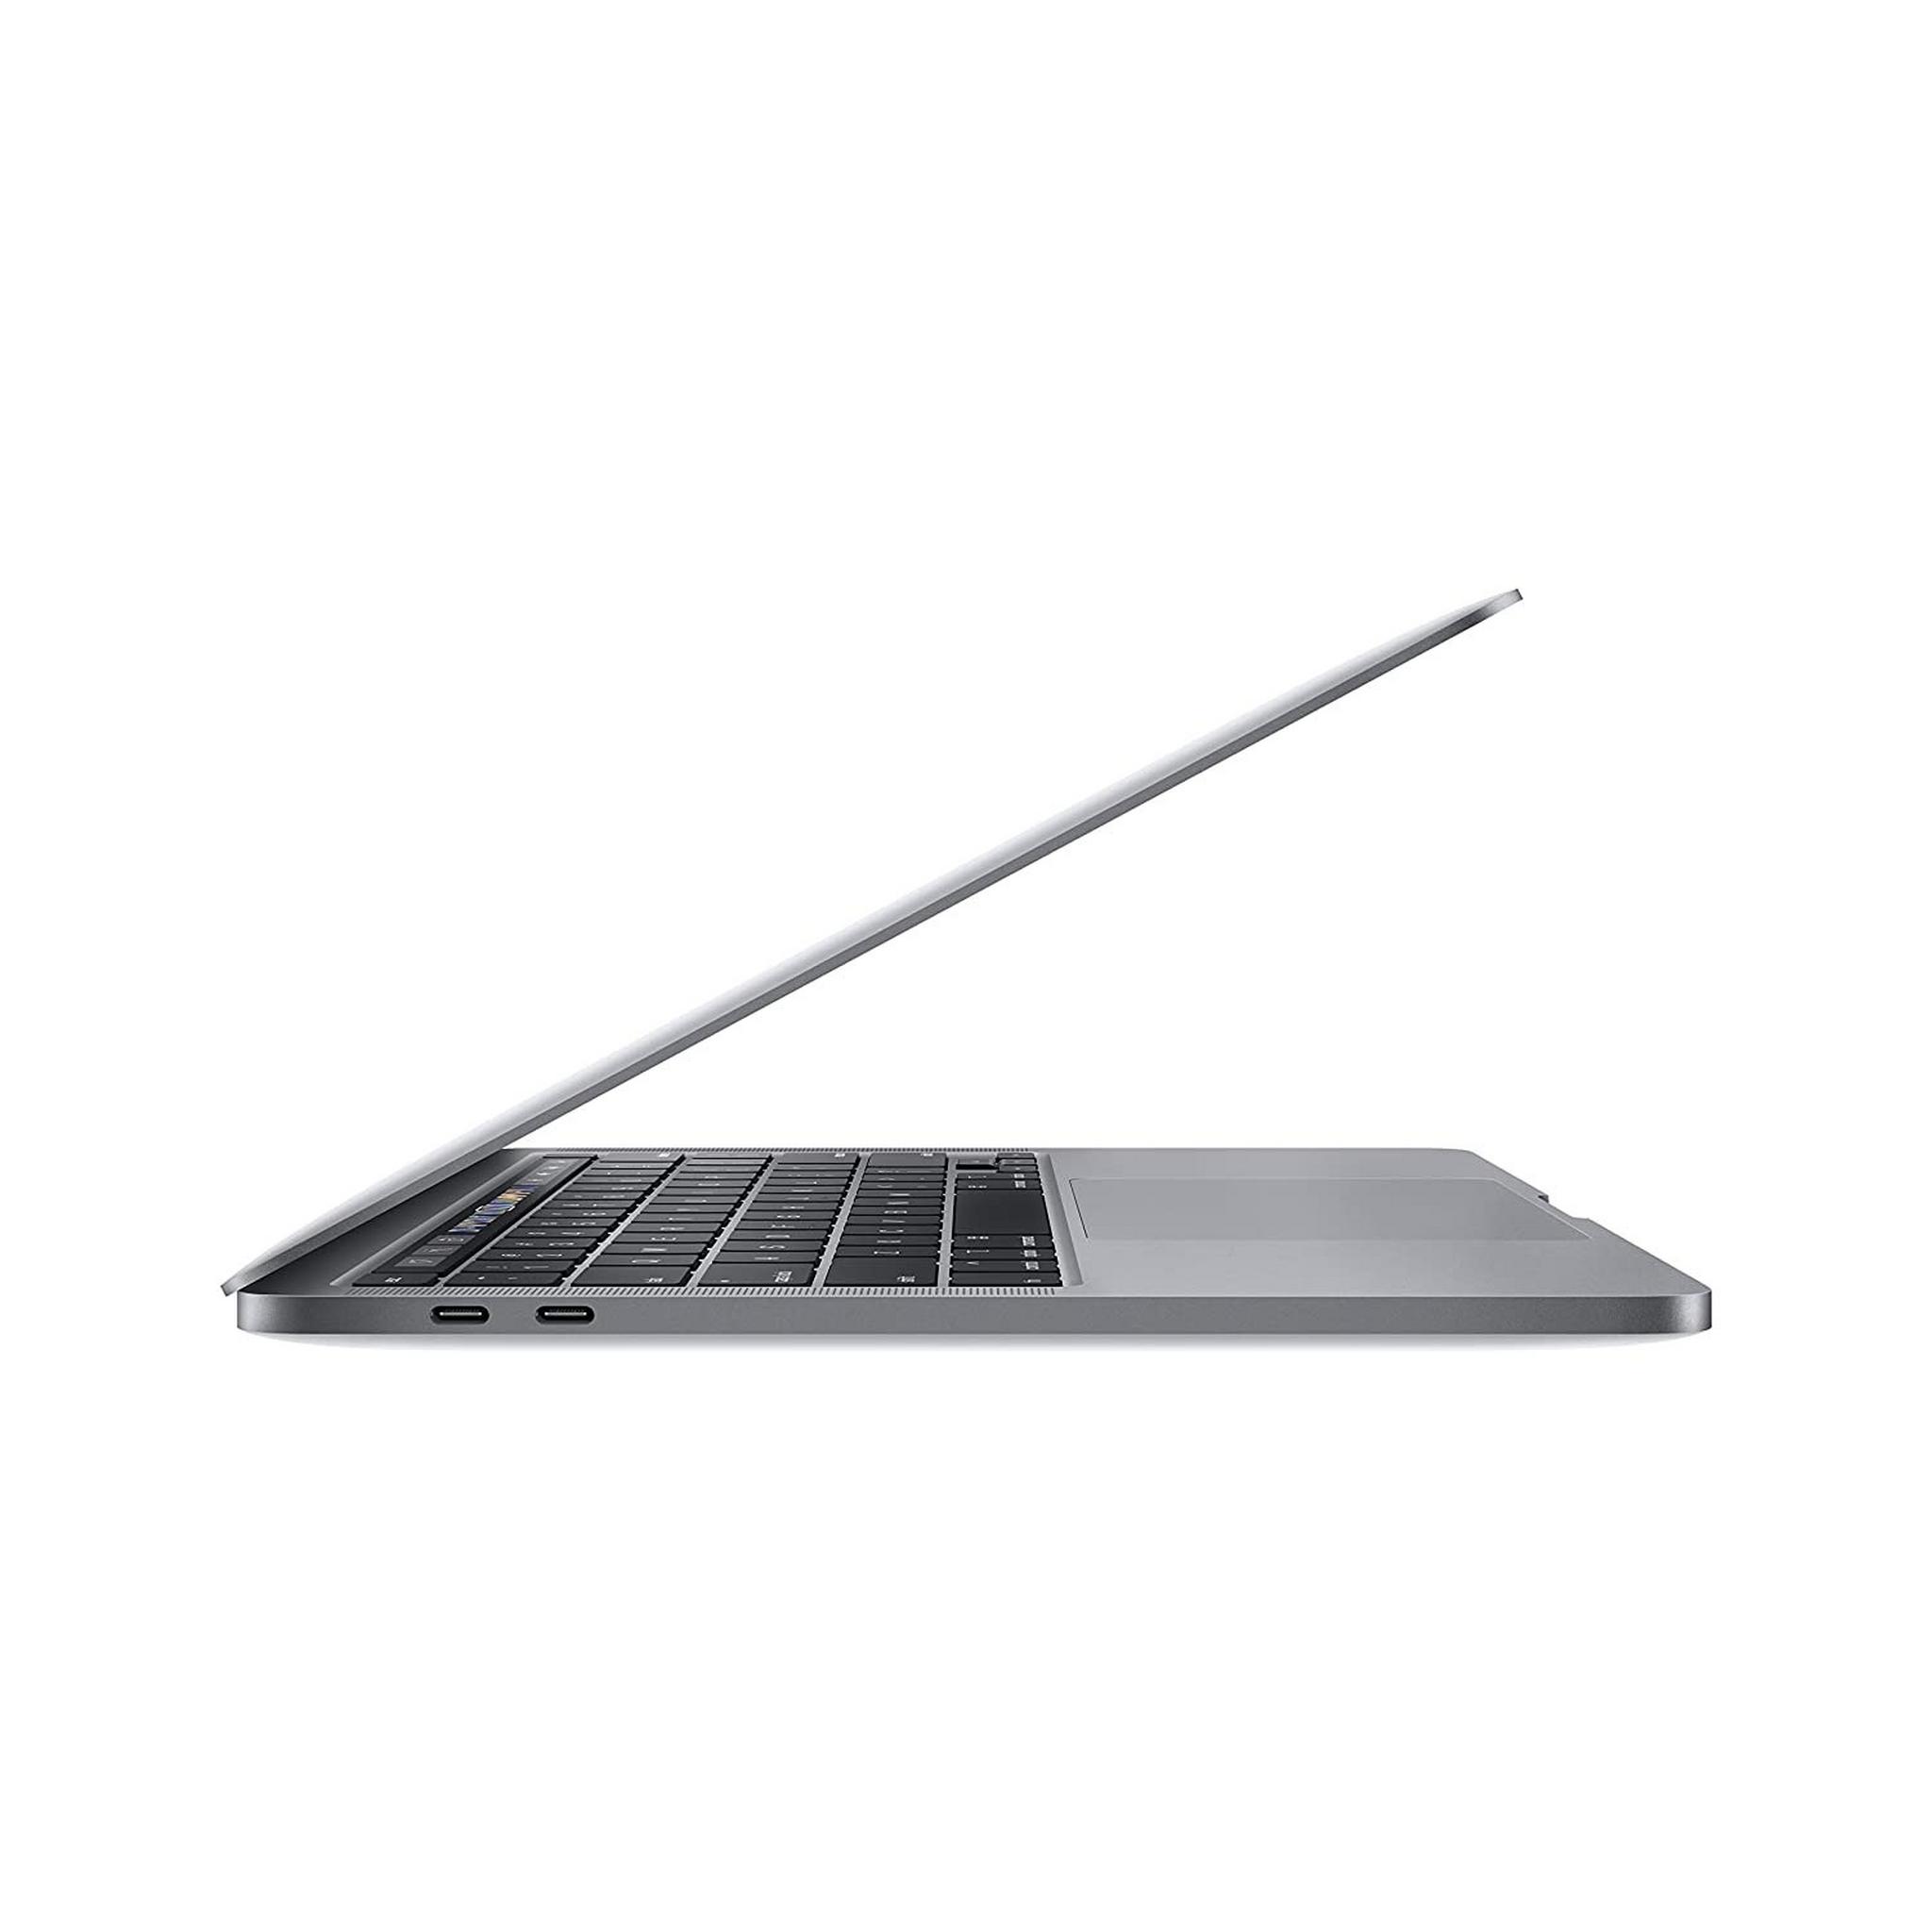 Apple Macbook Pro Core i9 9th Gen. 16GB RAM 1TB SSD 16" Laptop - Space Grey